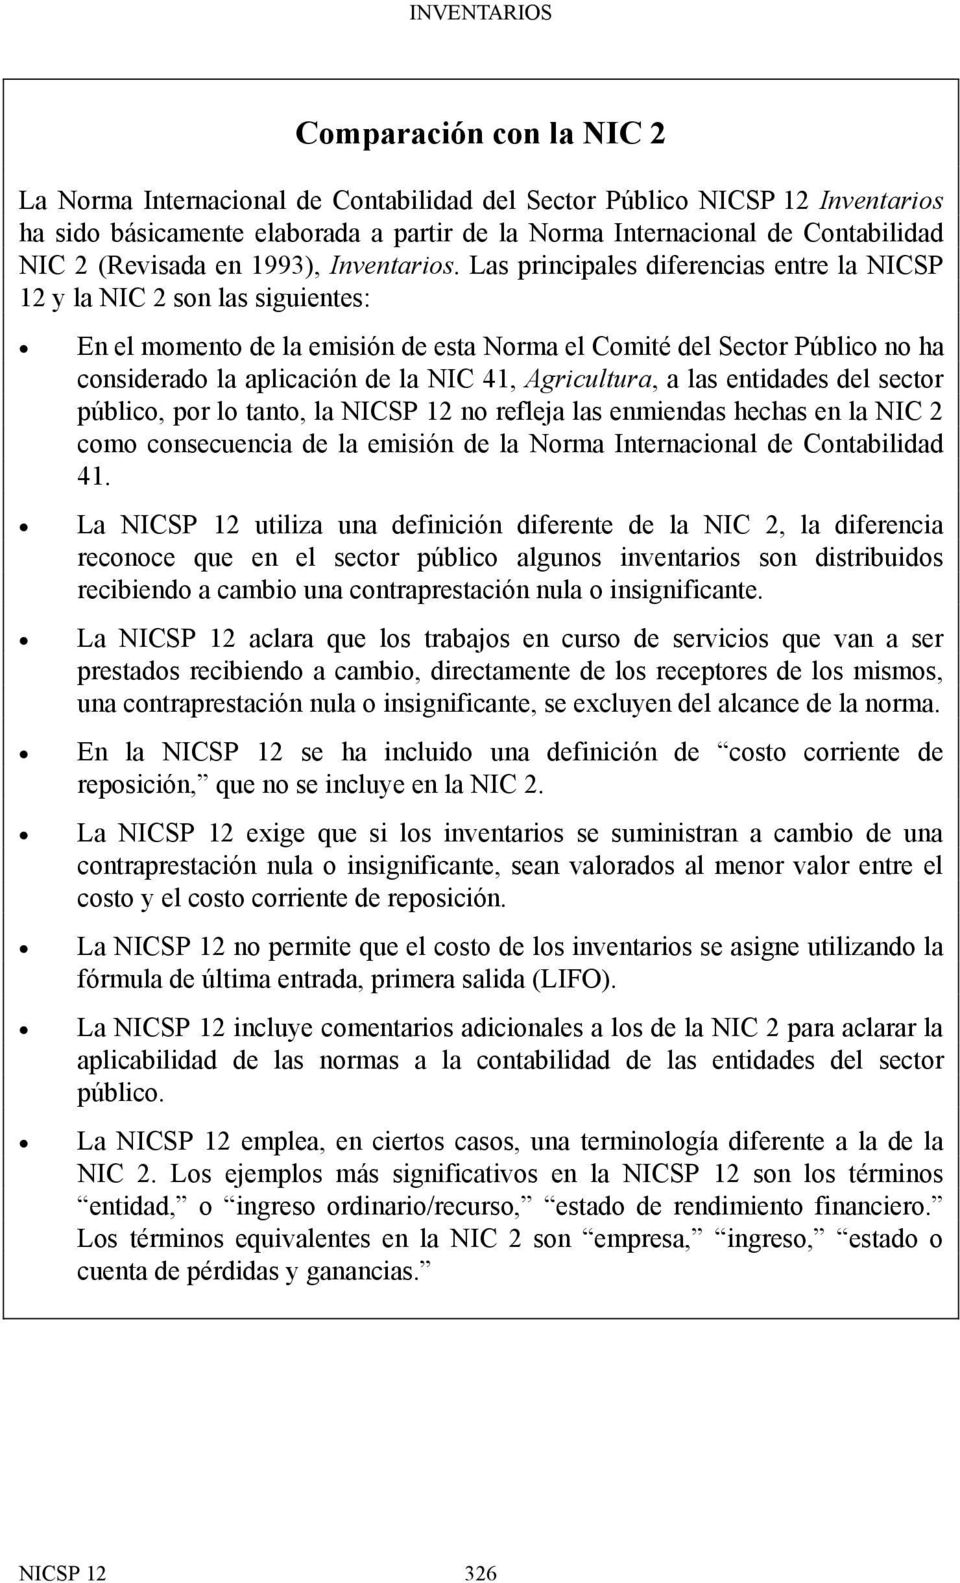 Las principales diferencias entre la NICSP 12 y la NIC 2 son las siguientes: En el momento de la emisión de esta Norma el Comité del Sector Público no ha considerado la aplicación de la NIC 41,